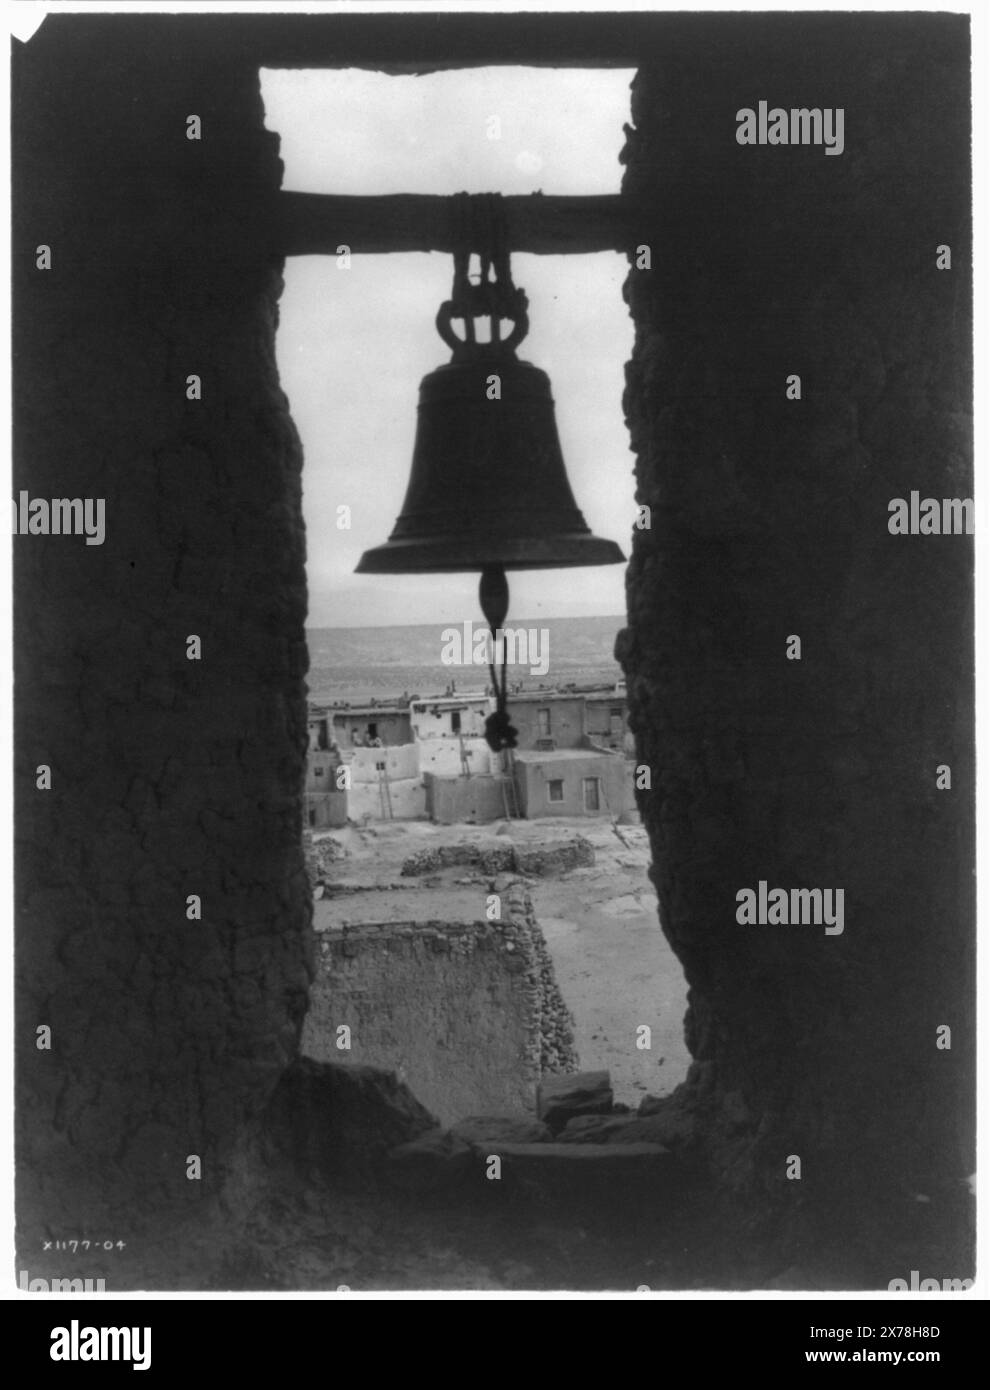 Der alte Glockenturm, Curtis 1177-04., ist Teil der Edward S. Curtis Collection. Indianer von Nordamerika, Structures, New Mexico, Acoma, 1900-1910. , Acoma Indians, Structures, New Mexico, Acoma, 1900-1910. , Adobe Buildings, New Mexico, Acoma, 1900-1910. , Bells, 1900-1910. , Pueblos, New Mexico, Acoma, 1900-1910. Stockfoto